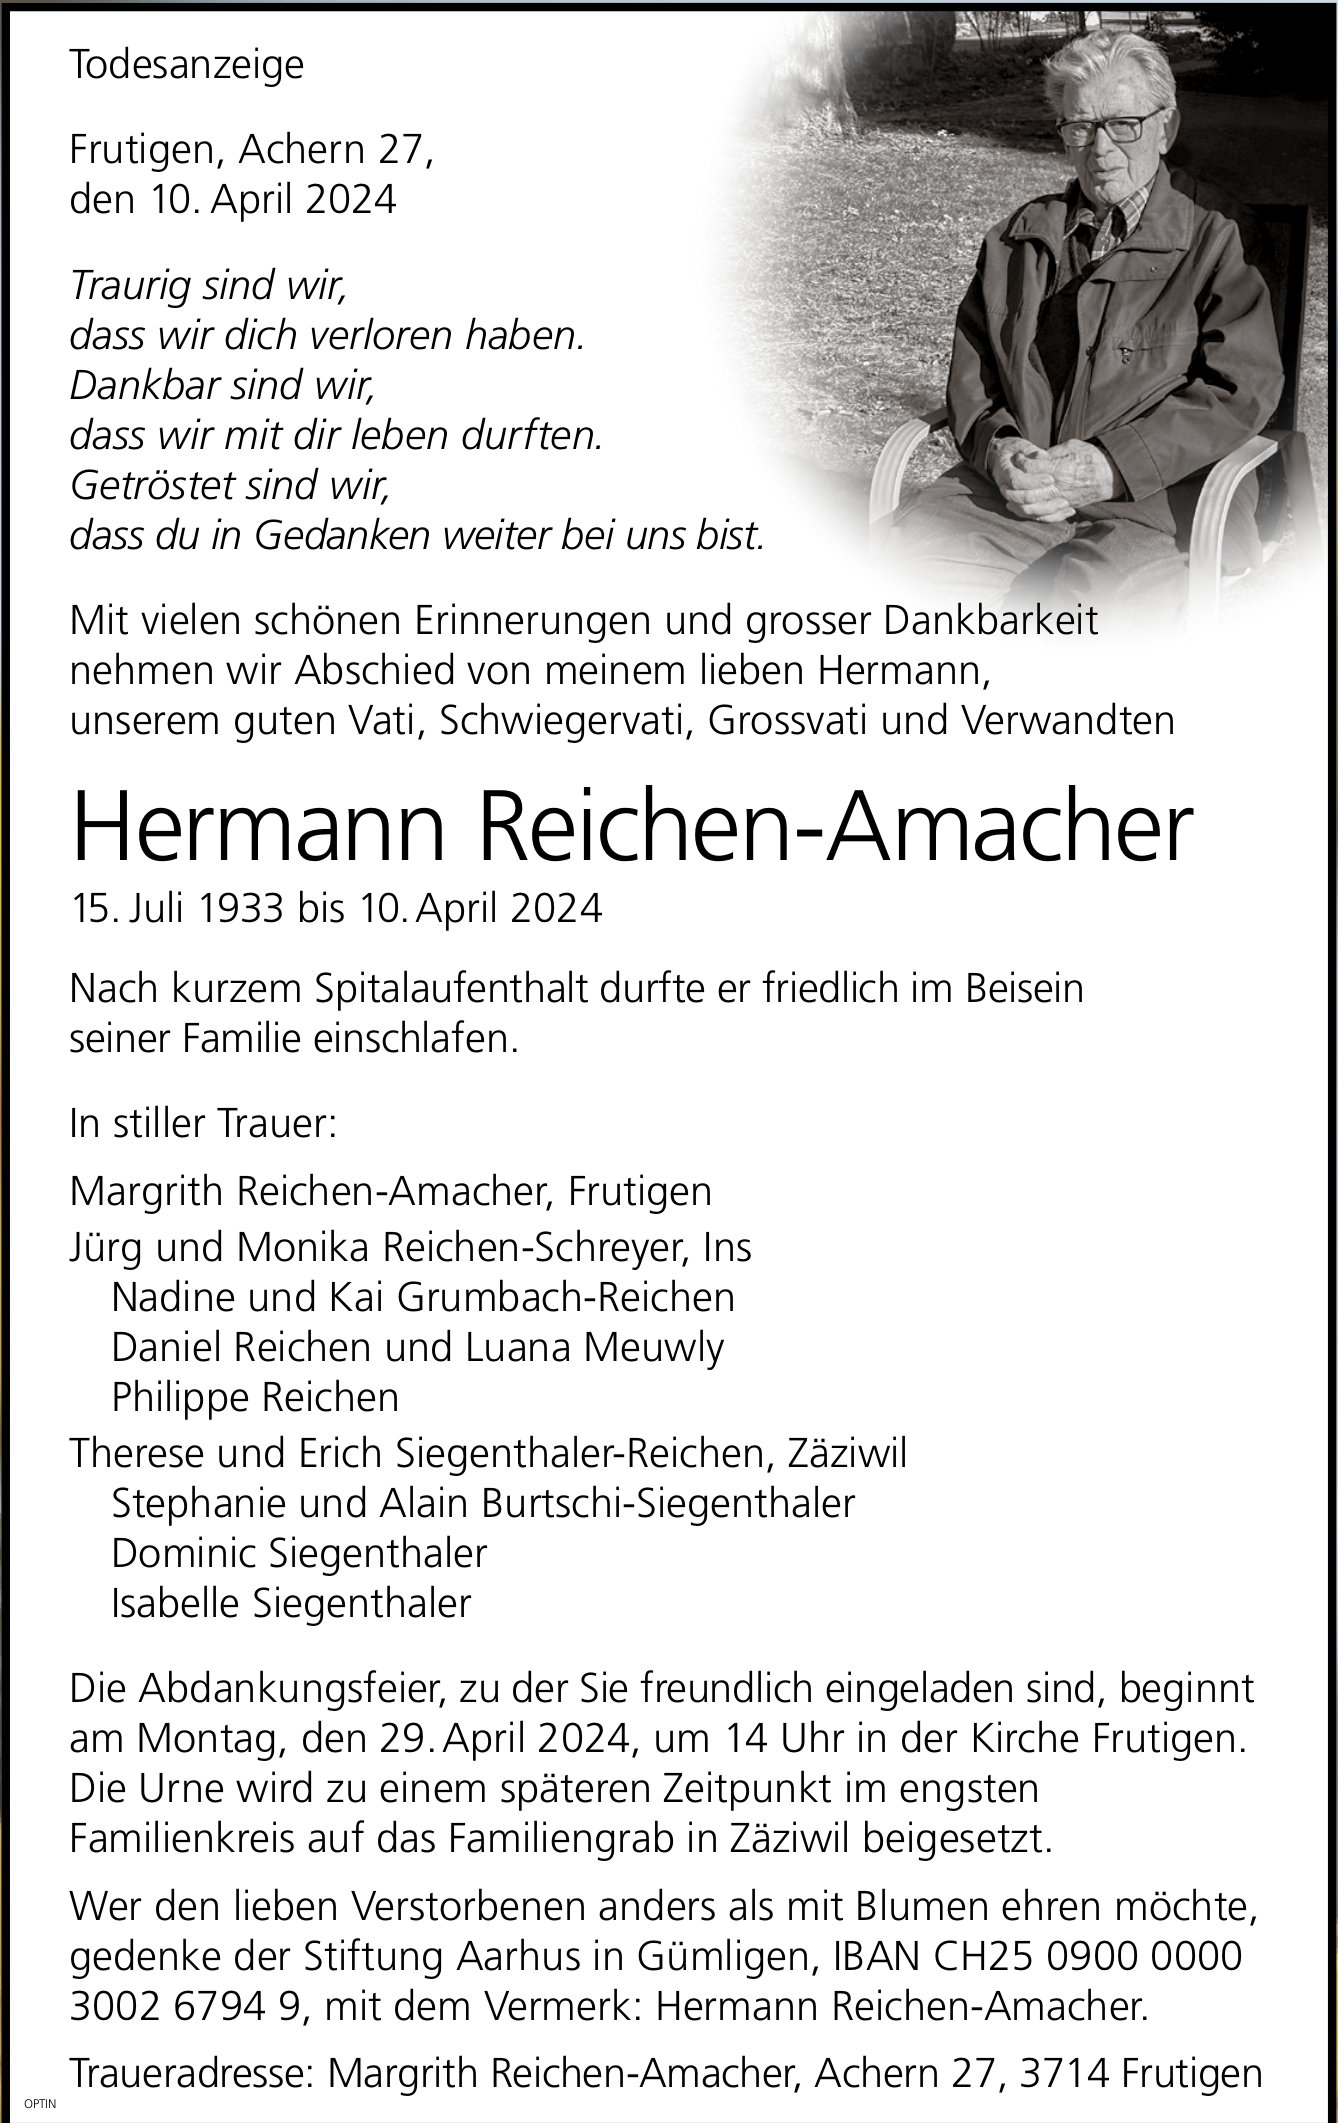 Hermann Reichen-Amacher, April 2024 / TA